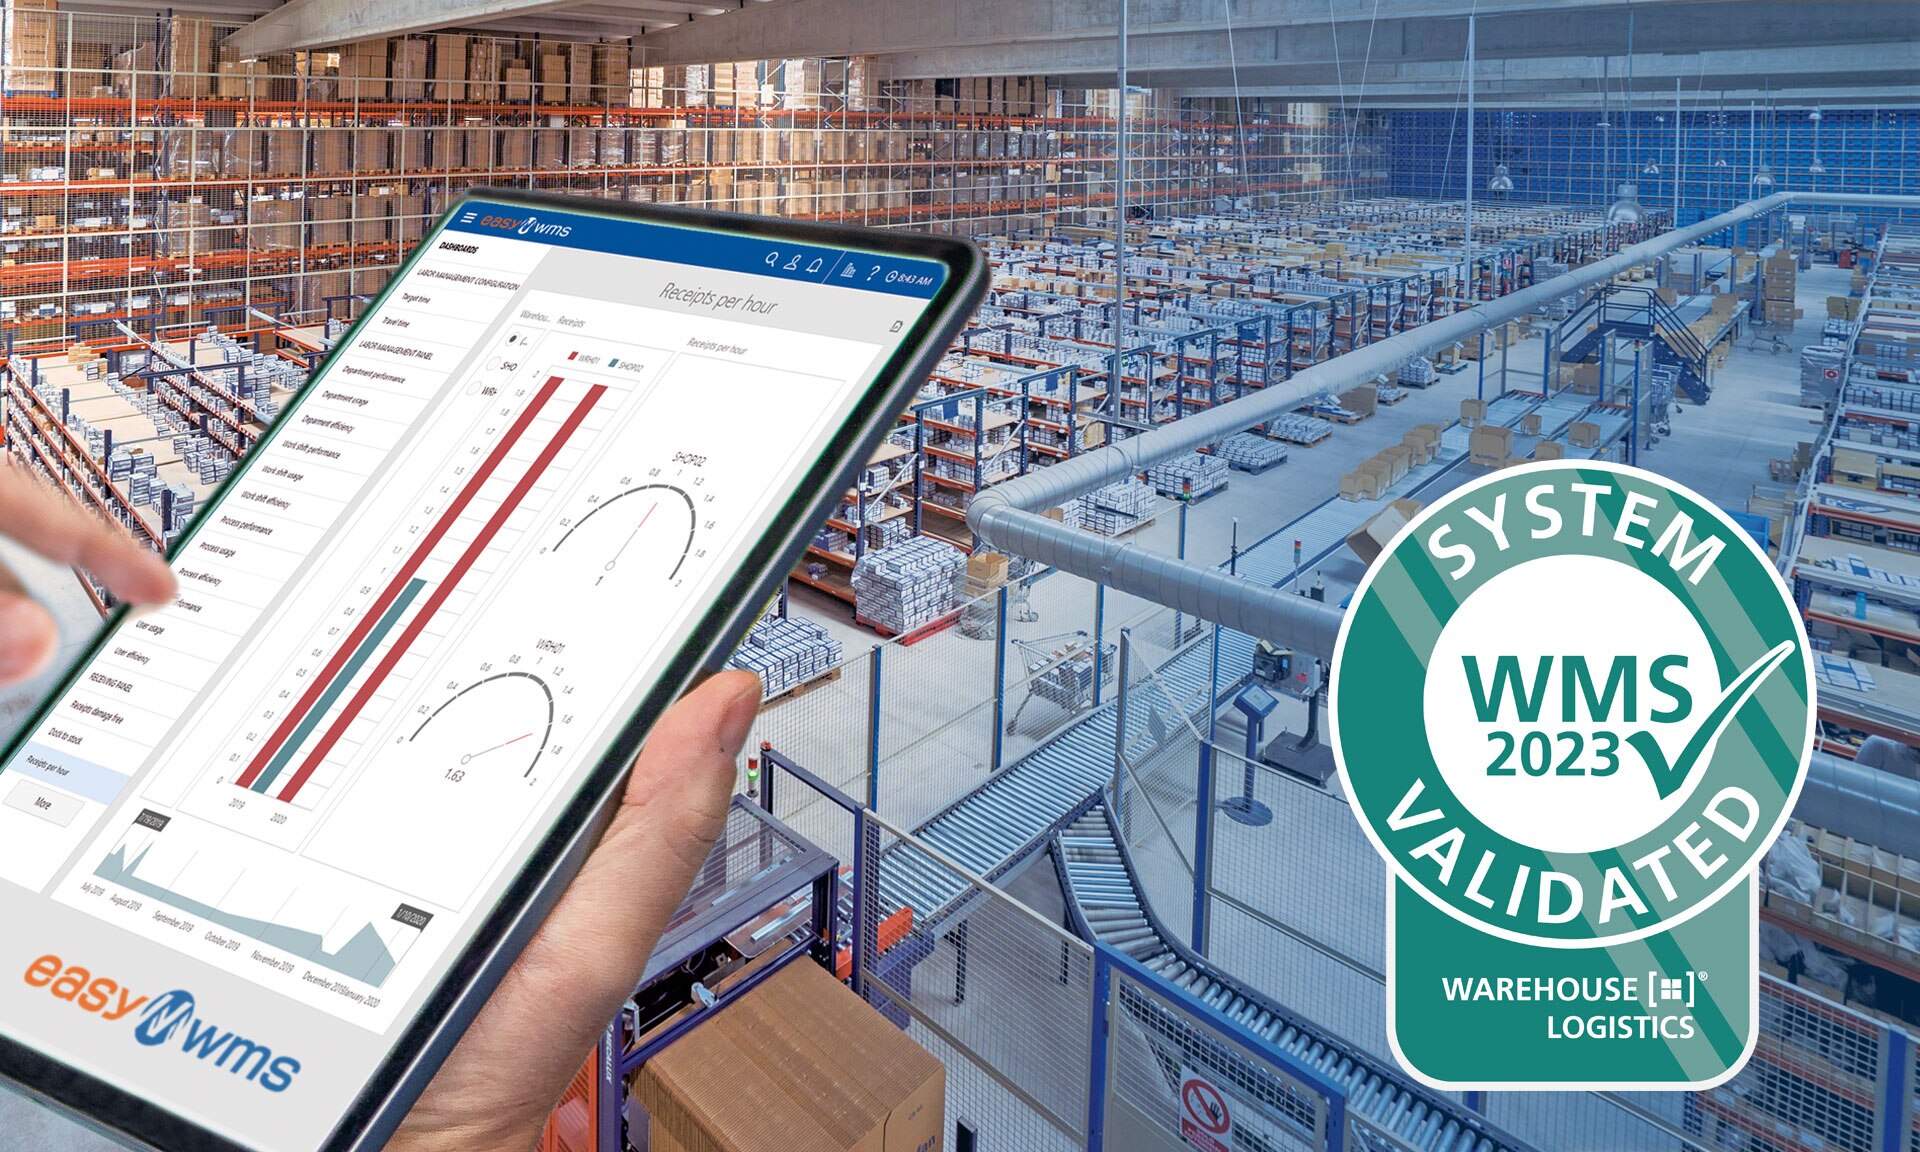 Easy WMS von Mecalux: das zweite Jahr in Folge im warehouse logistics Portal vom Fraunhofer IML